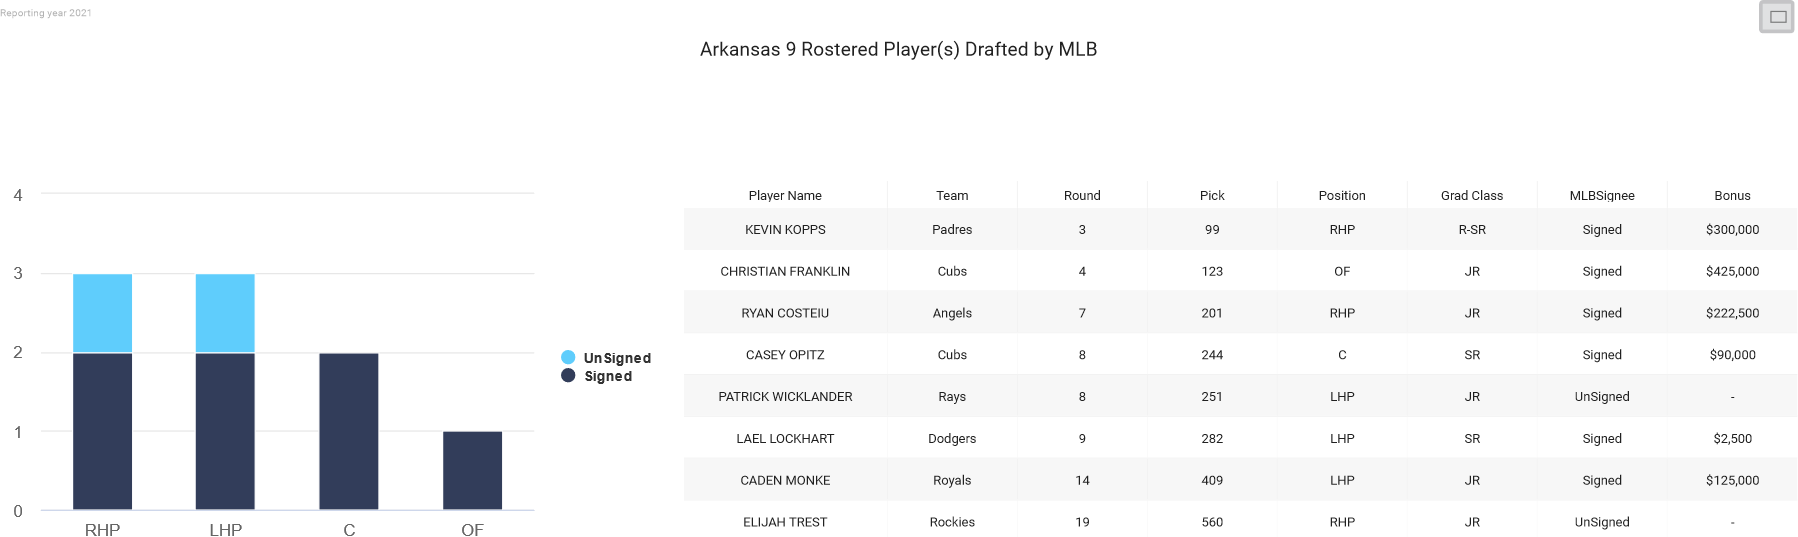 Arkansas 2021 MLB Draft